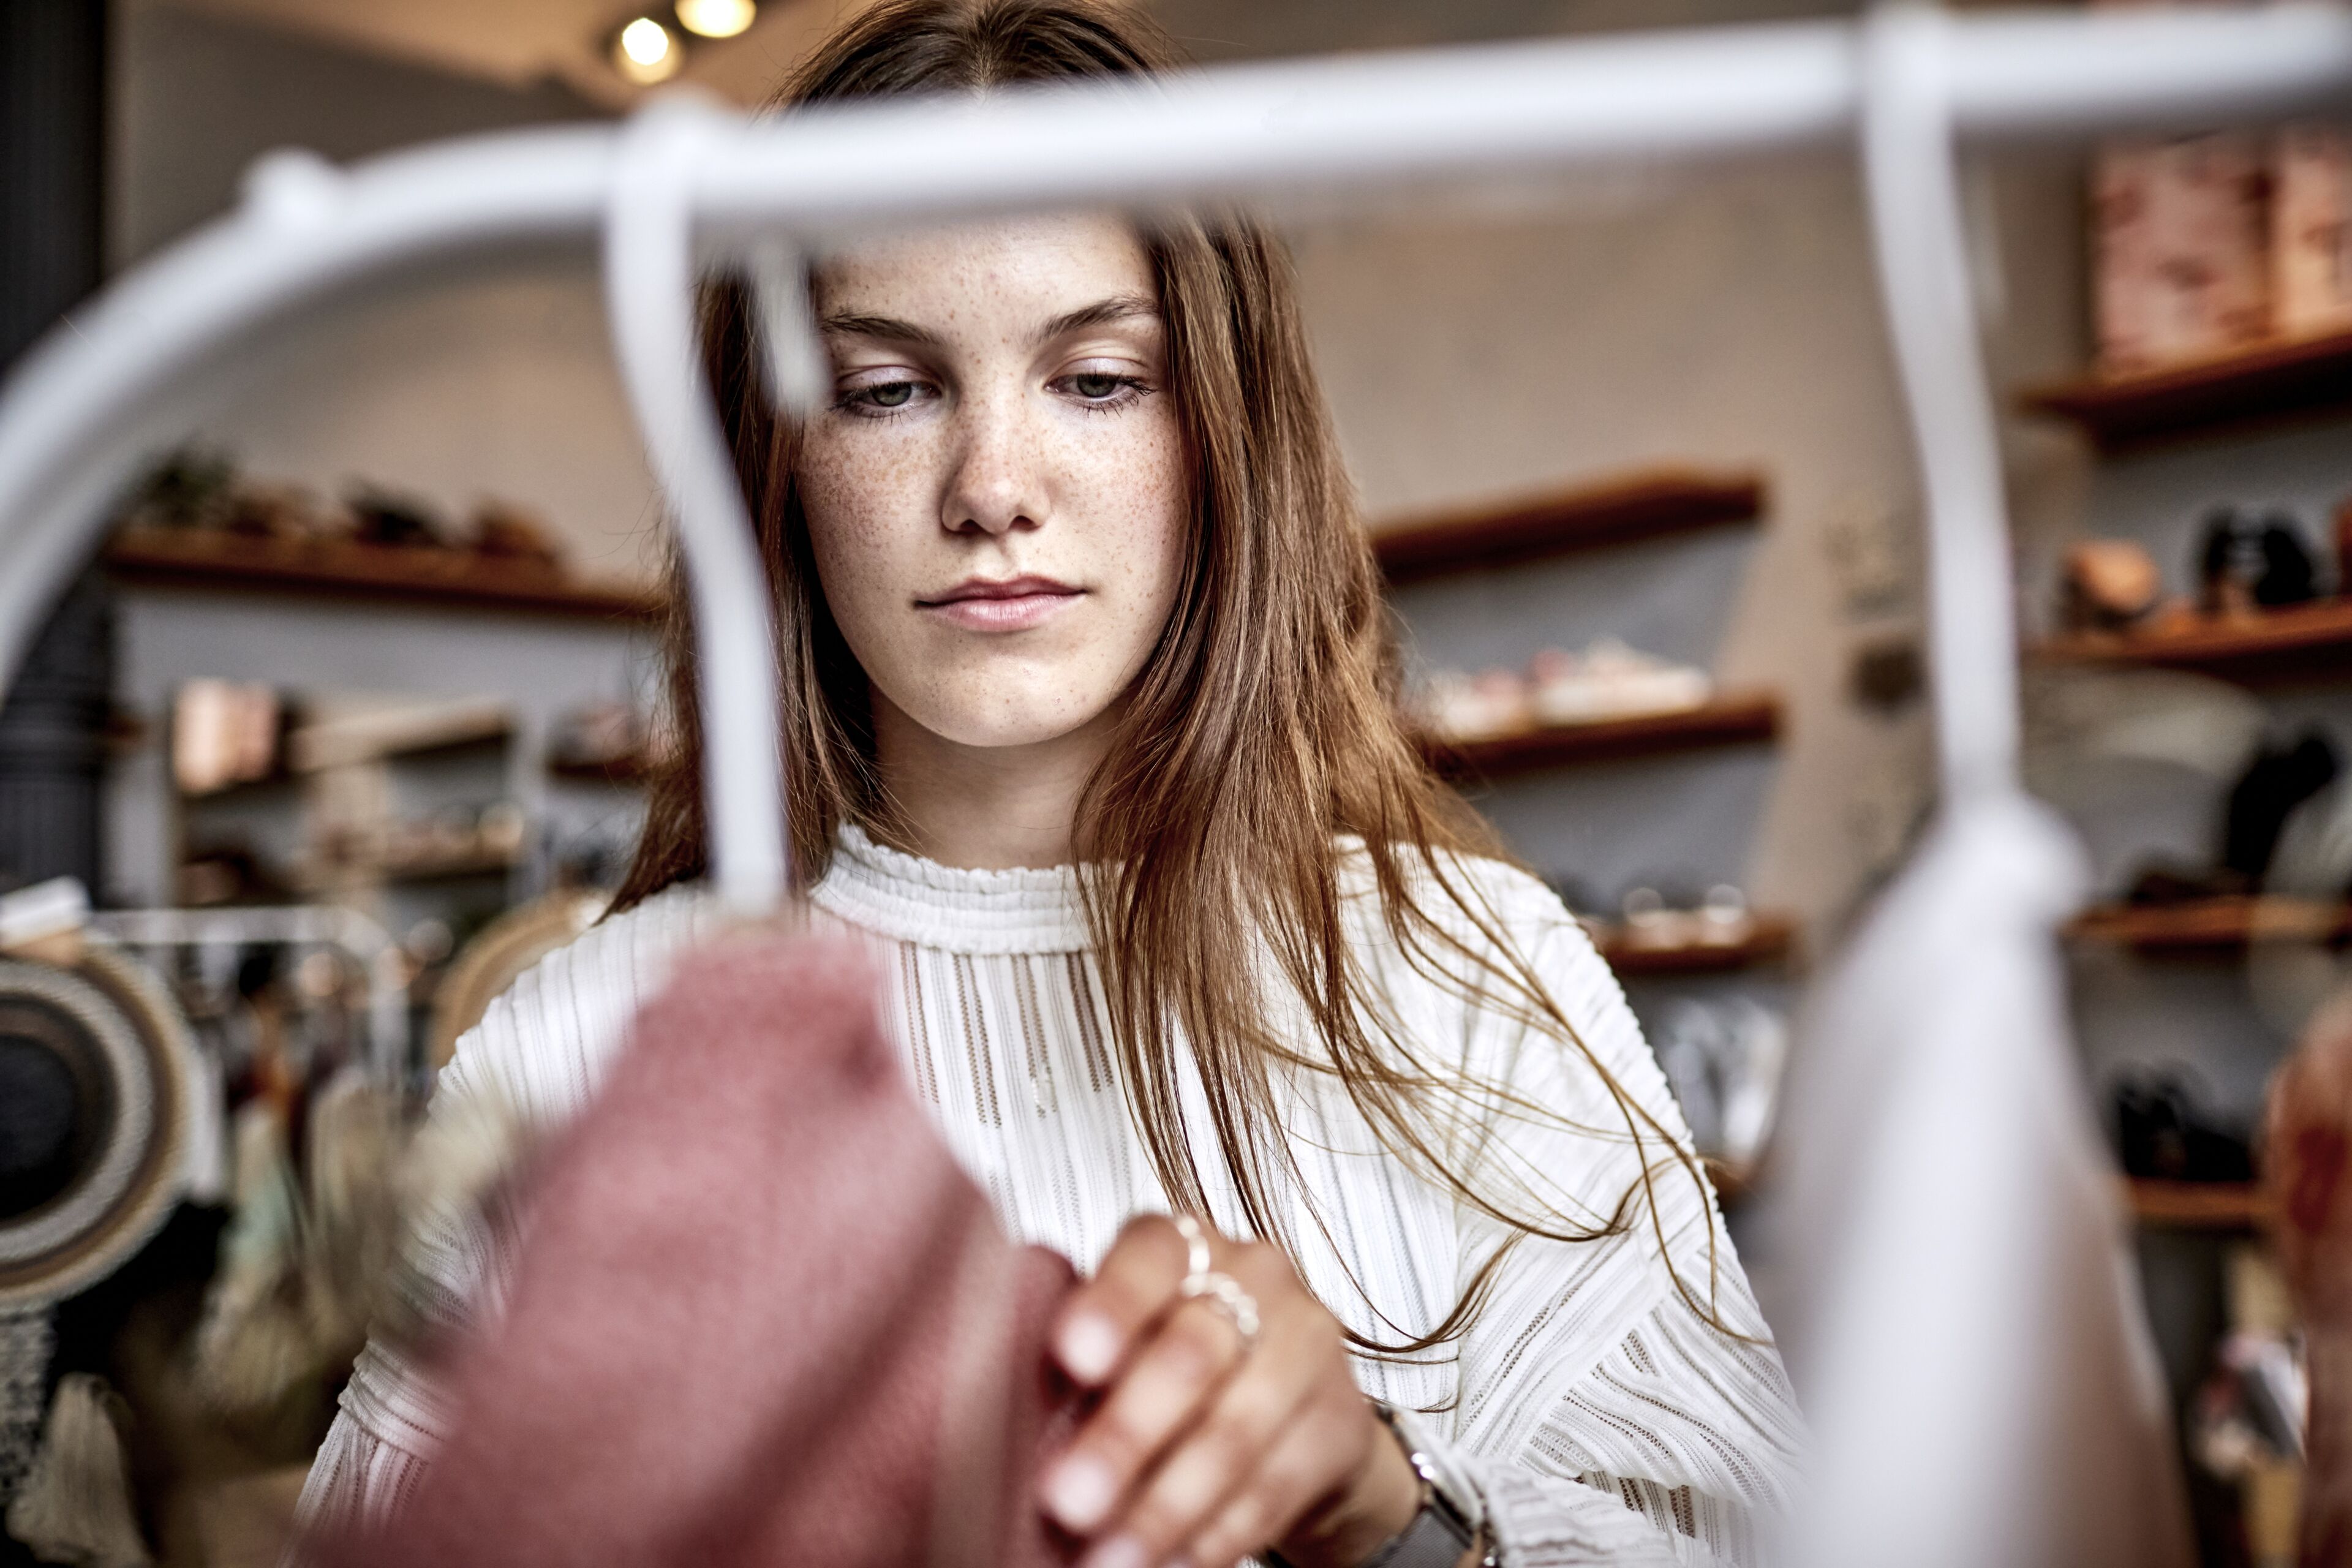 Une jeune femme examine attentivement un vêtement dans une boutique, l'expression songeuse.